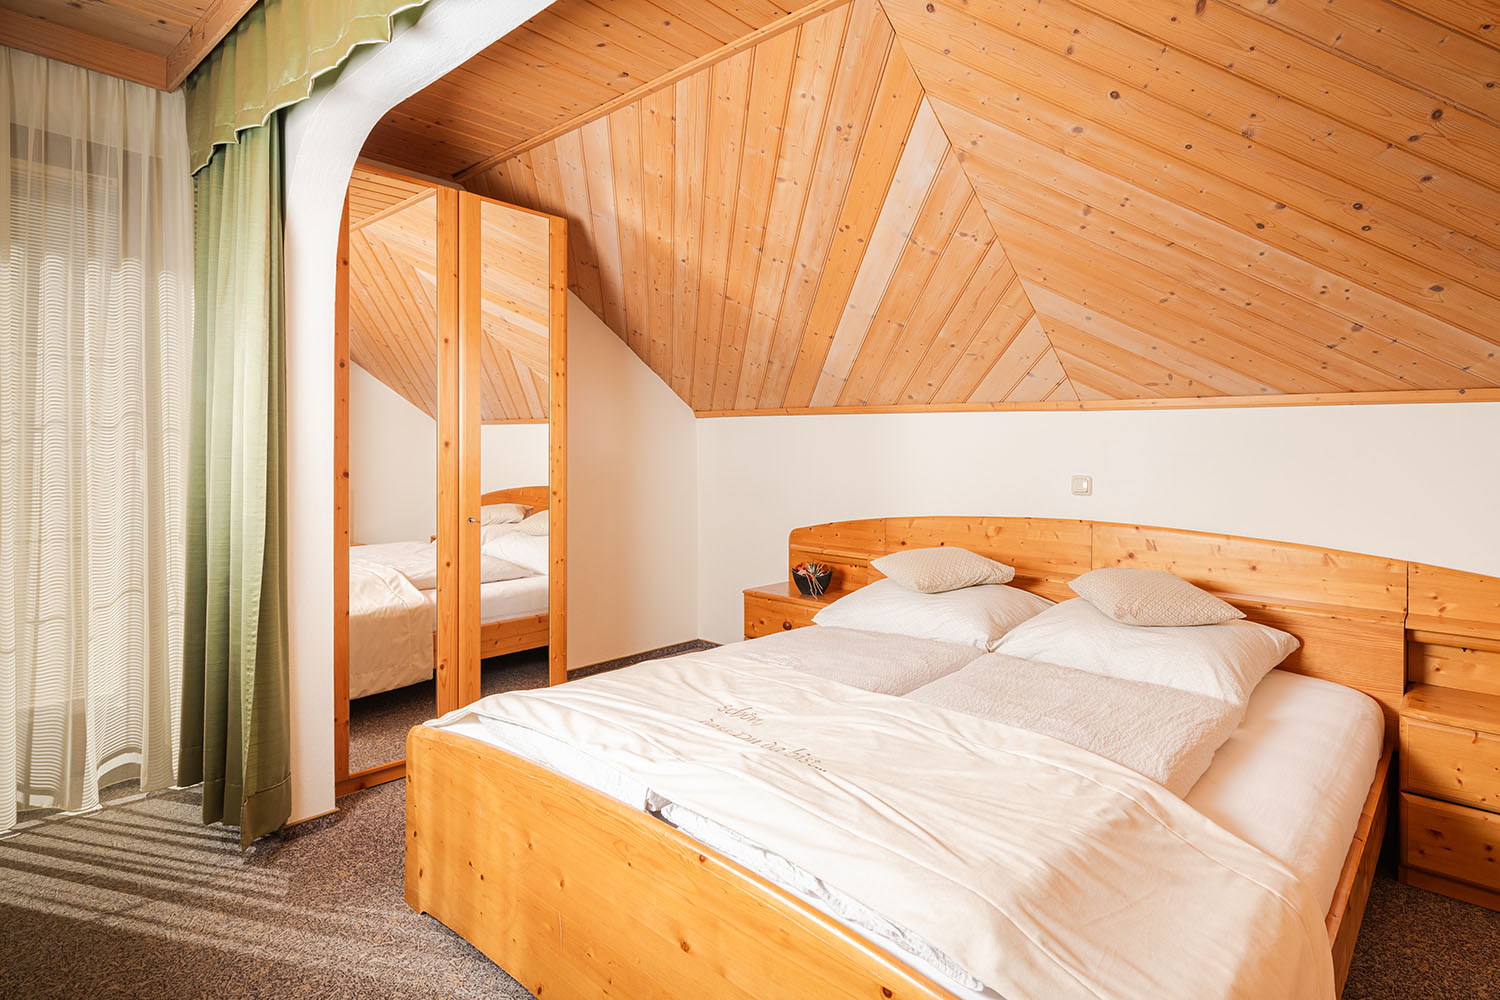 Gemütlich, geräumig und mit viel Zirbenholz eingerichtet - das Gästehaus Santner bietet Komfortzimmer, Doppelzimmer, Jugendzimmer und Appartements